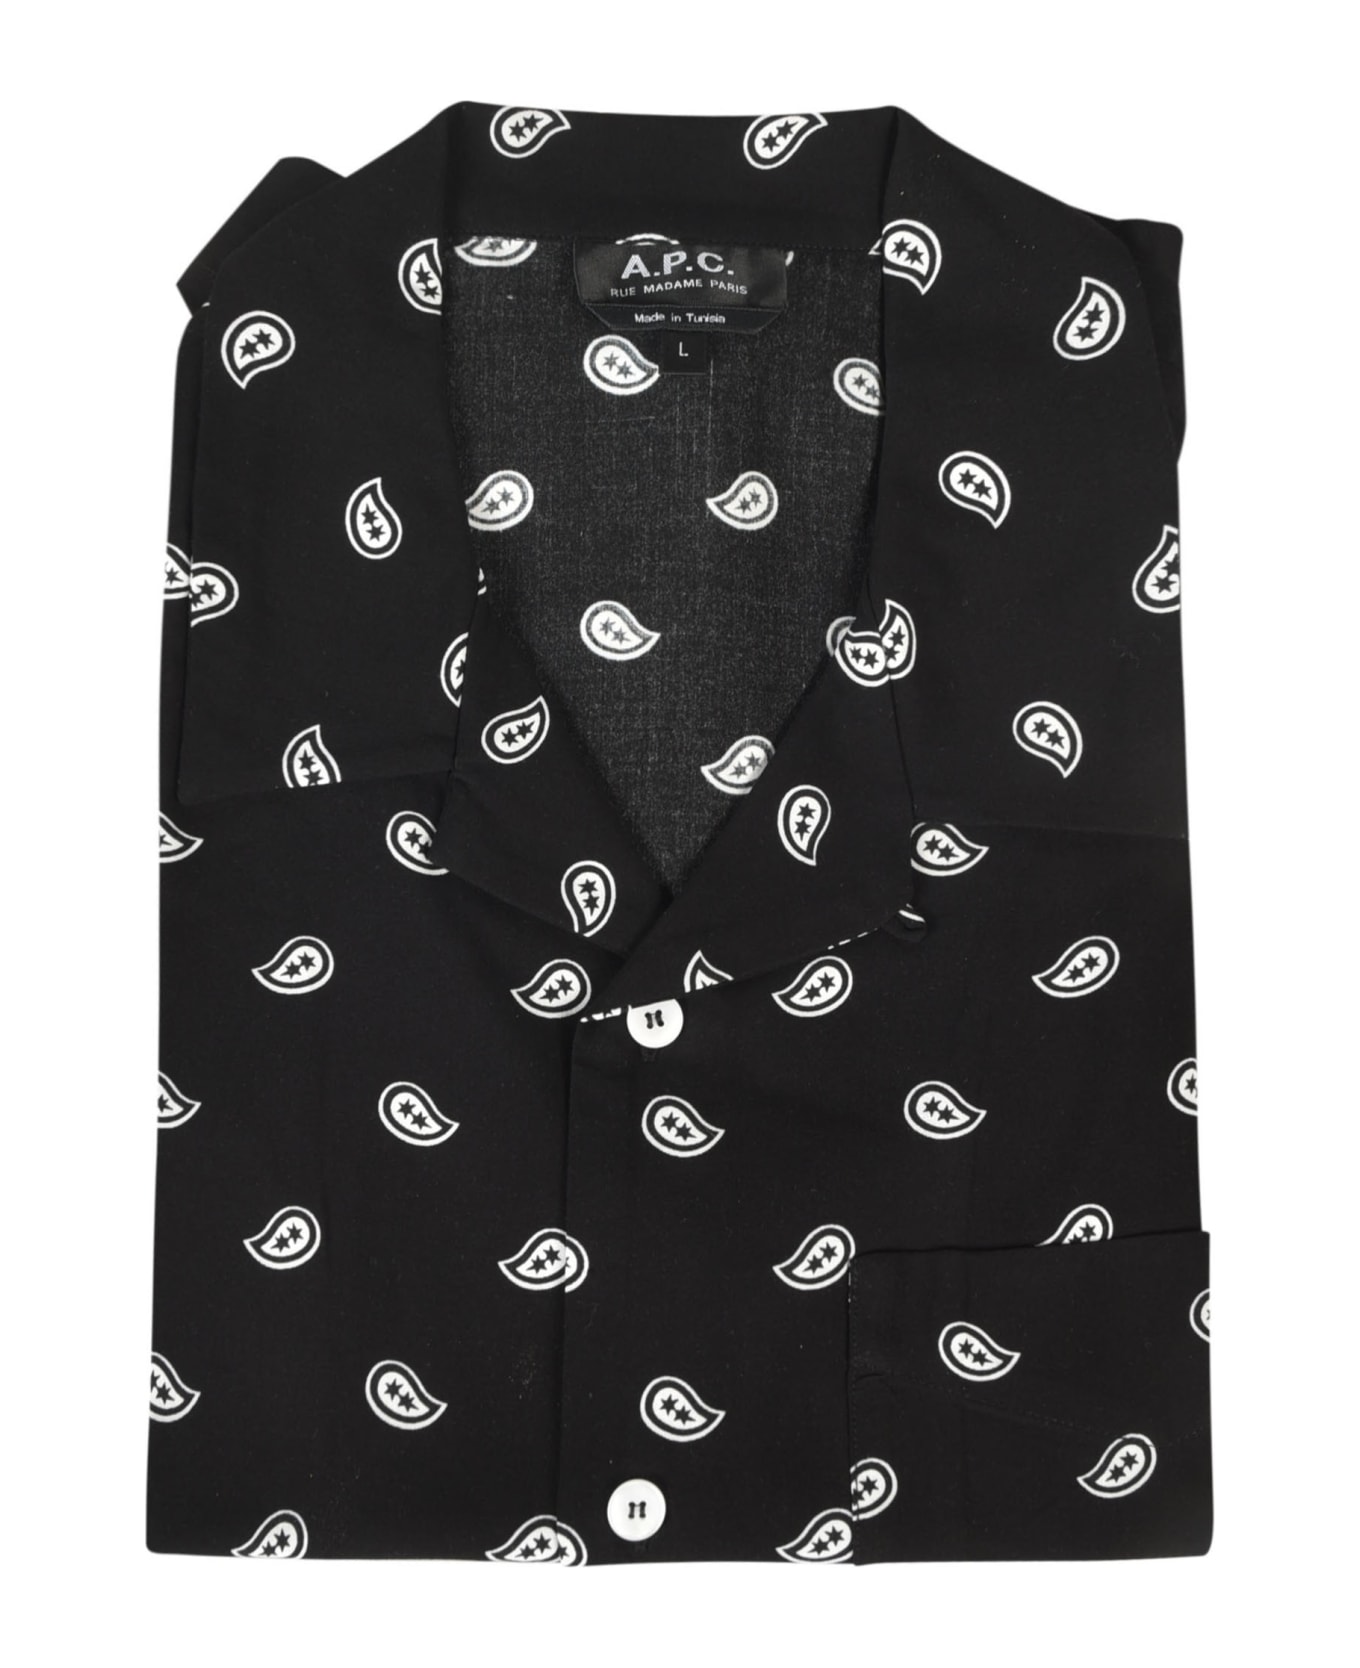 A.P.C. Lloy Shirt - Black